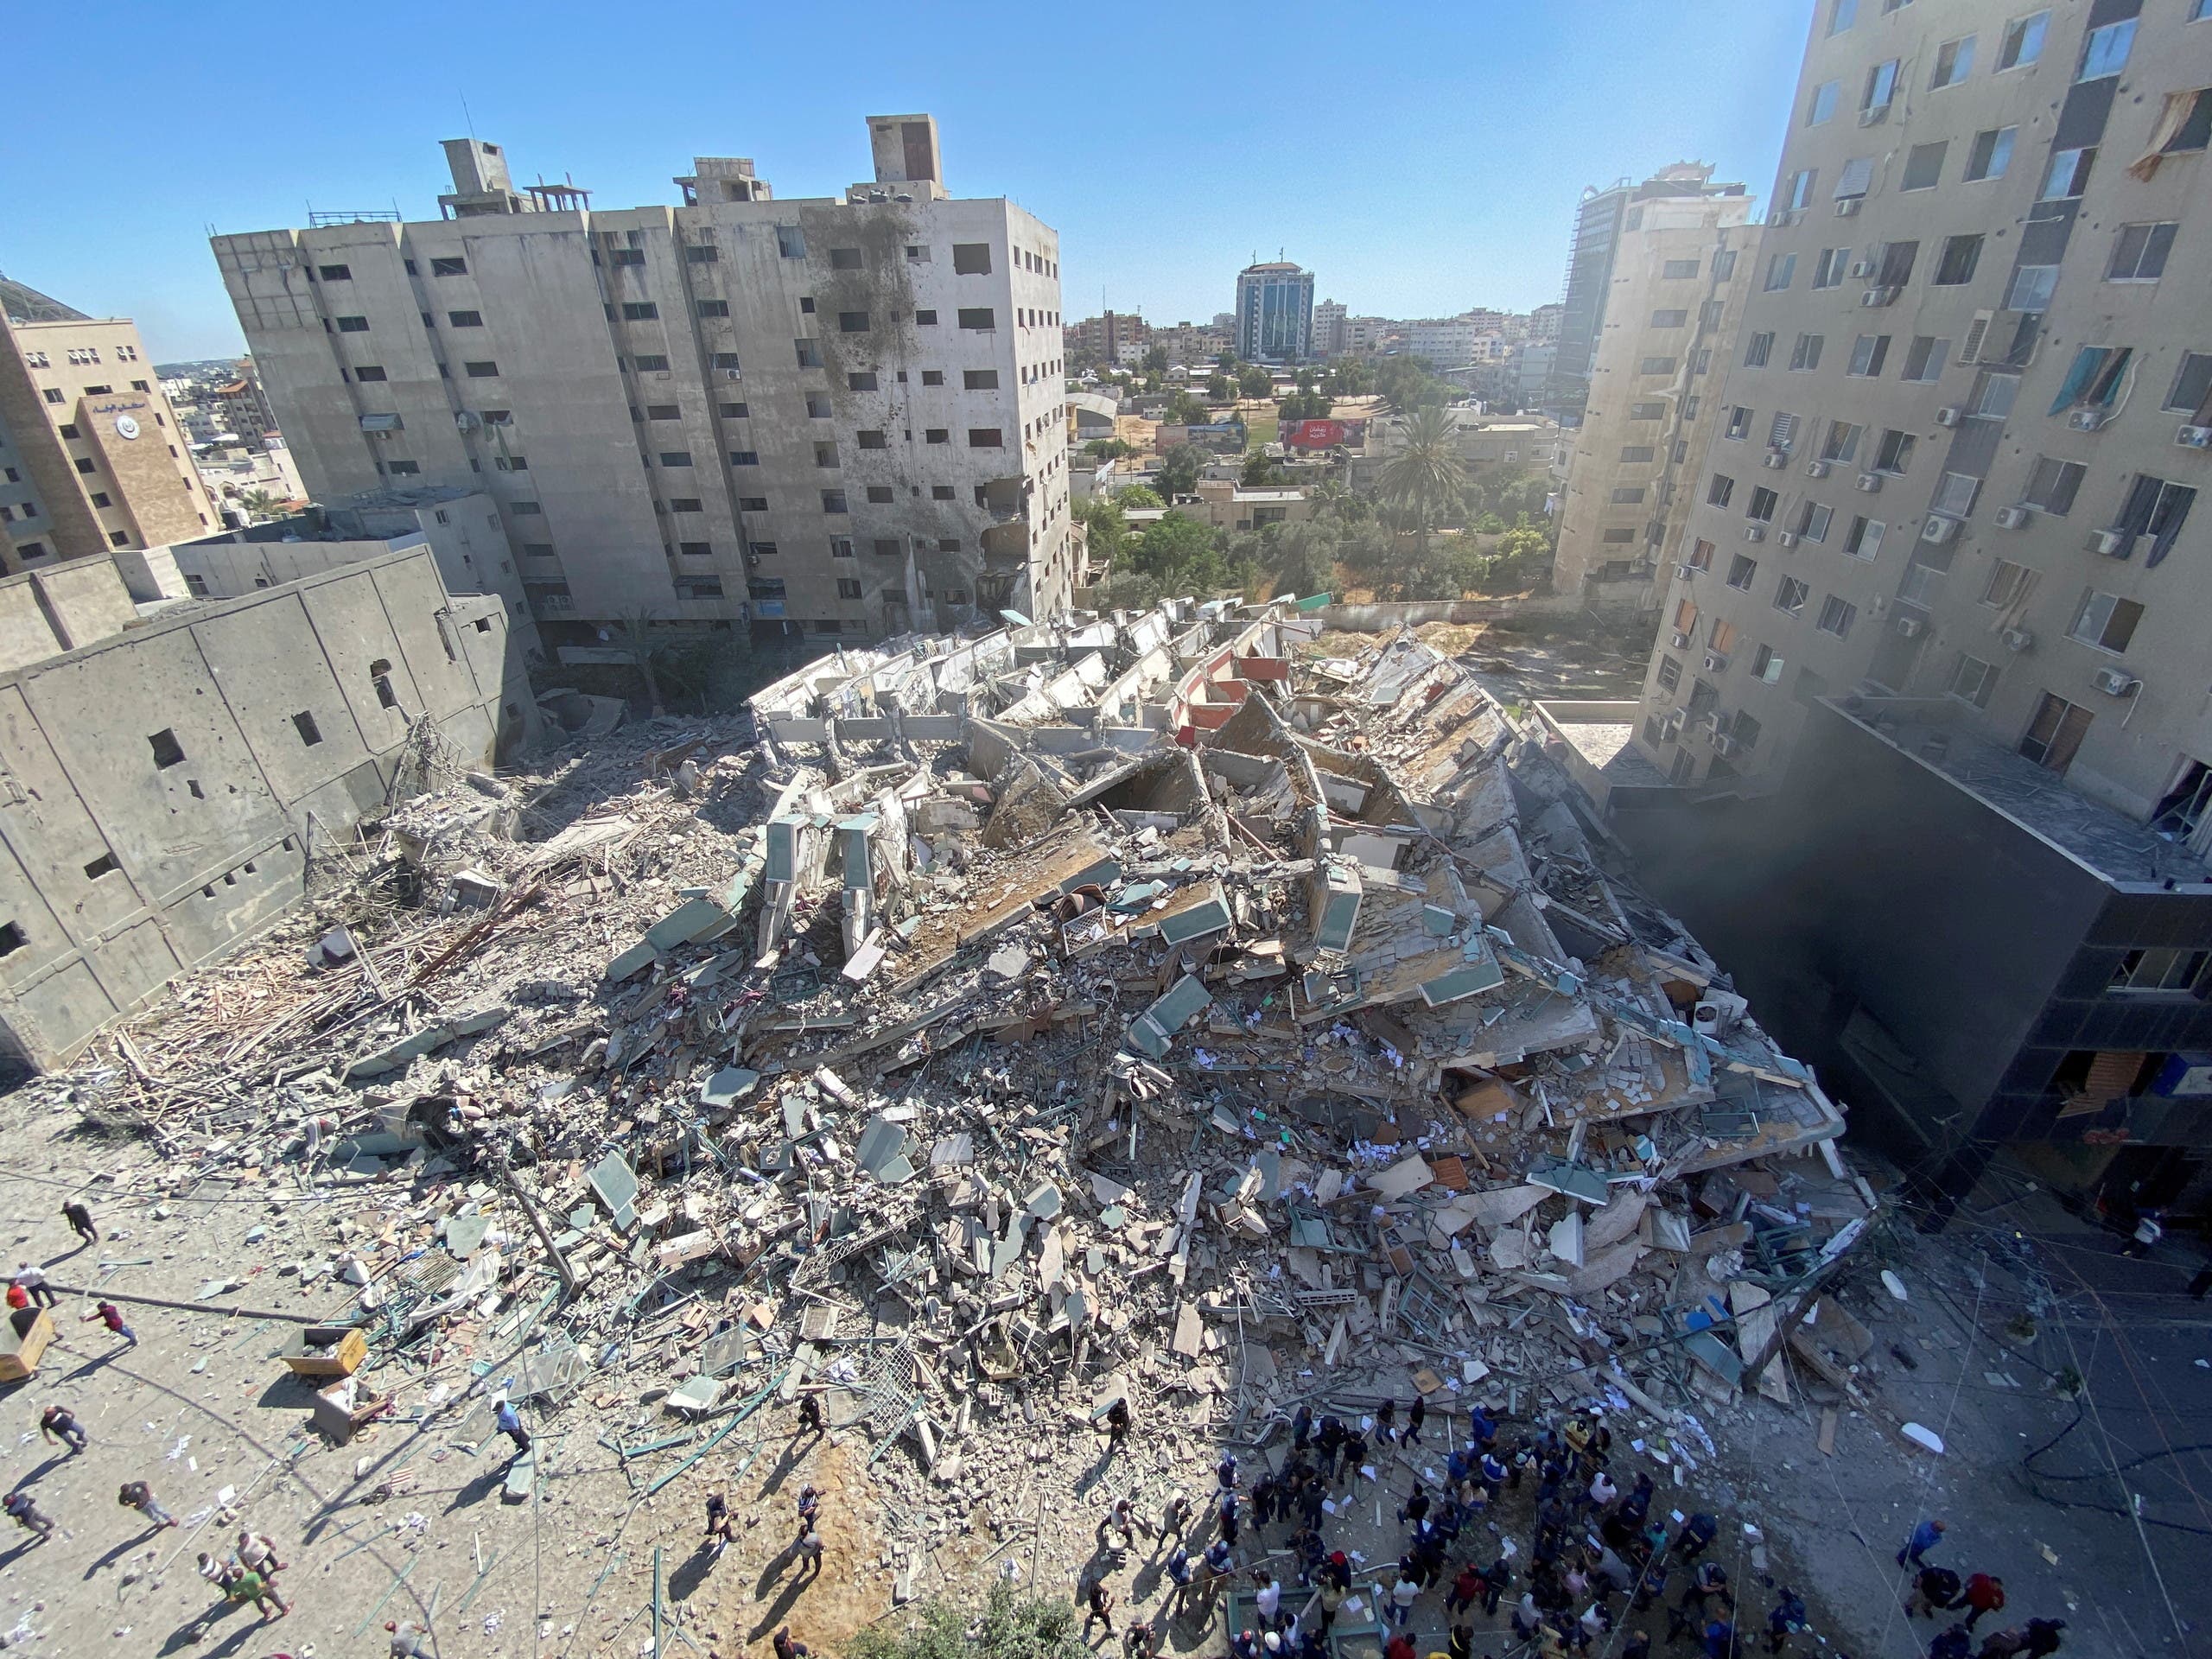 برج الجلاء في غزة الذي يحوي مكاتب صحفية قصفته إسرائيل ودمرته بالكامل 15 مايو 2021 فرانس برس